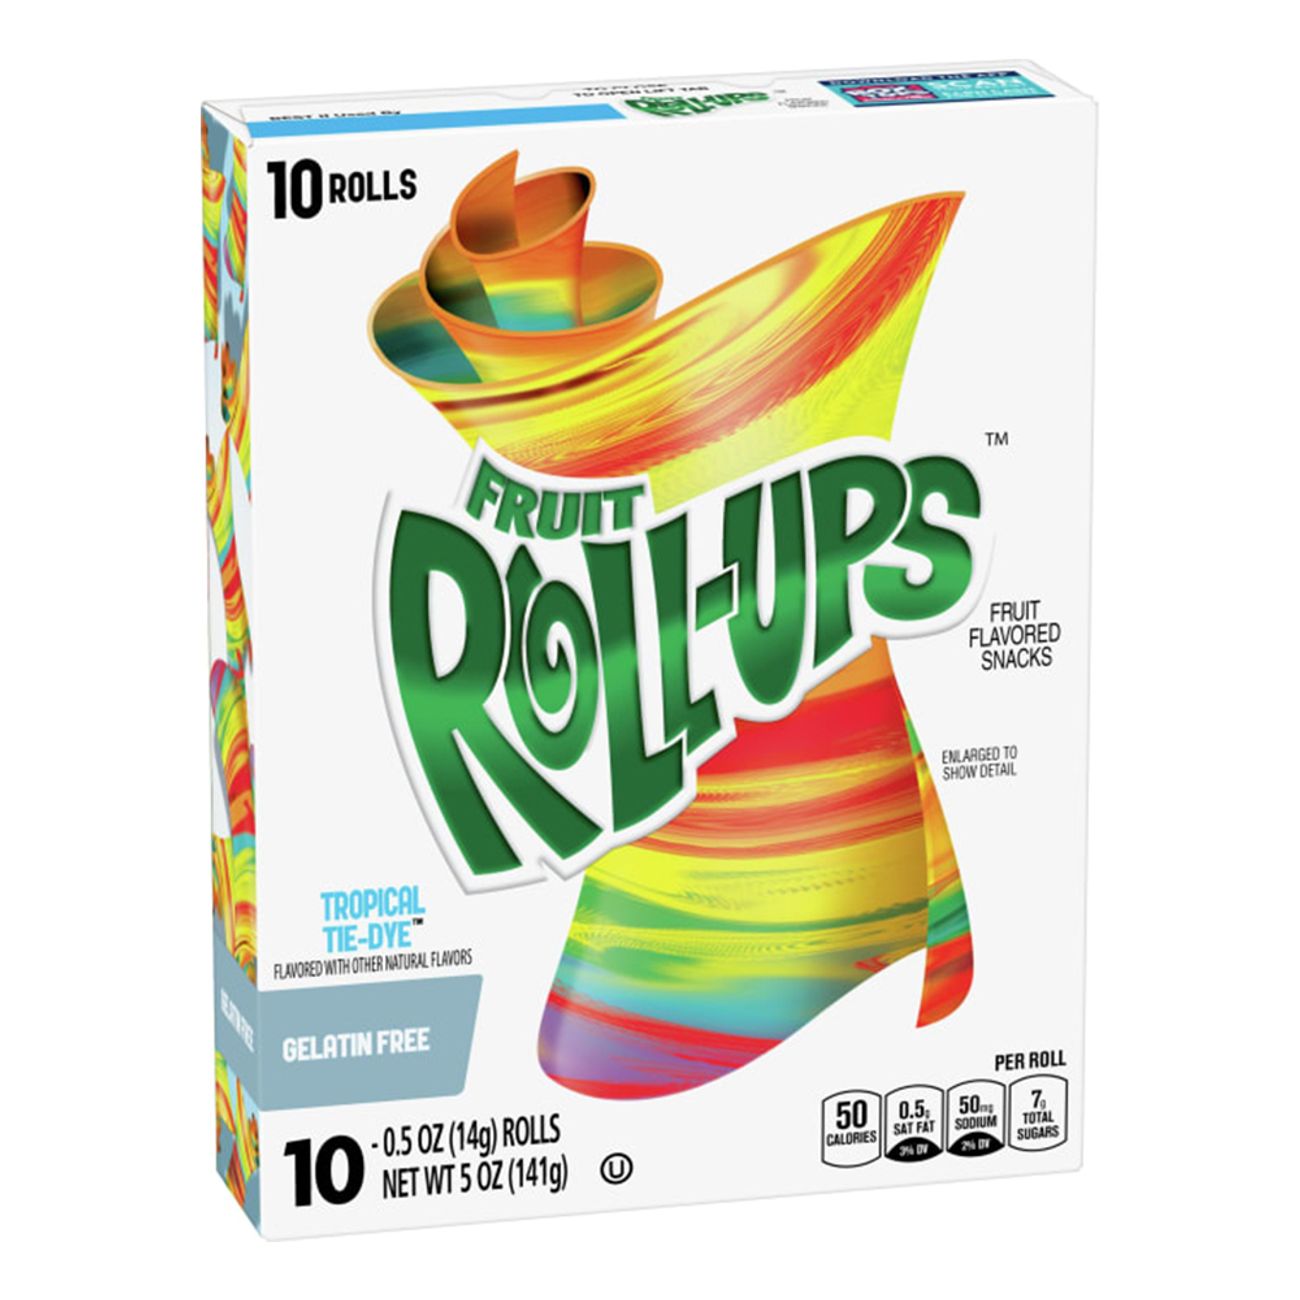 fruit-roll-ups-tropical-tie-dye-94696-1